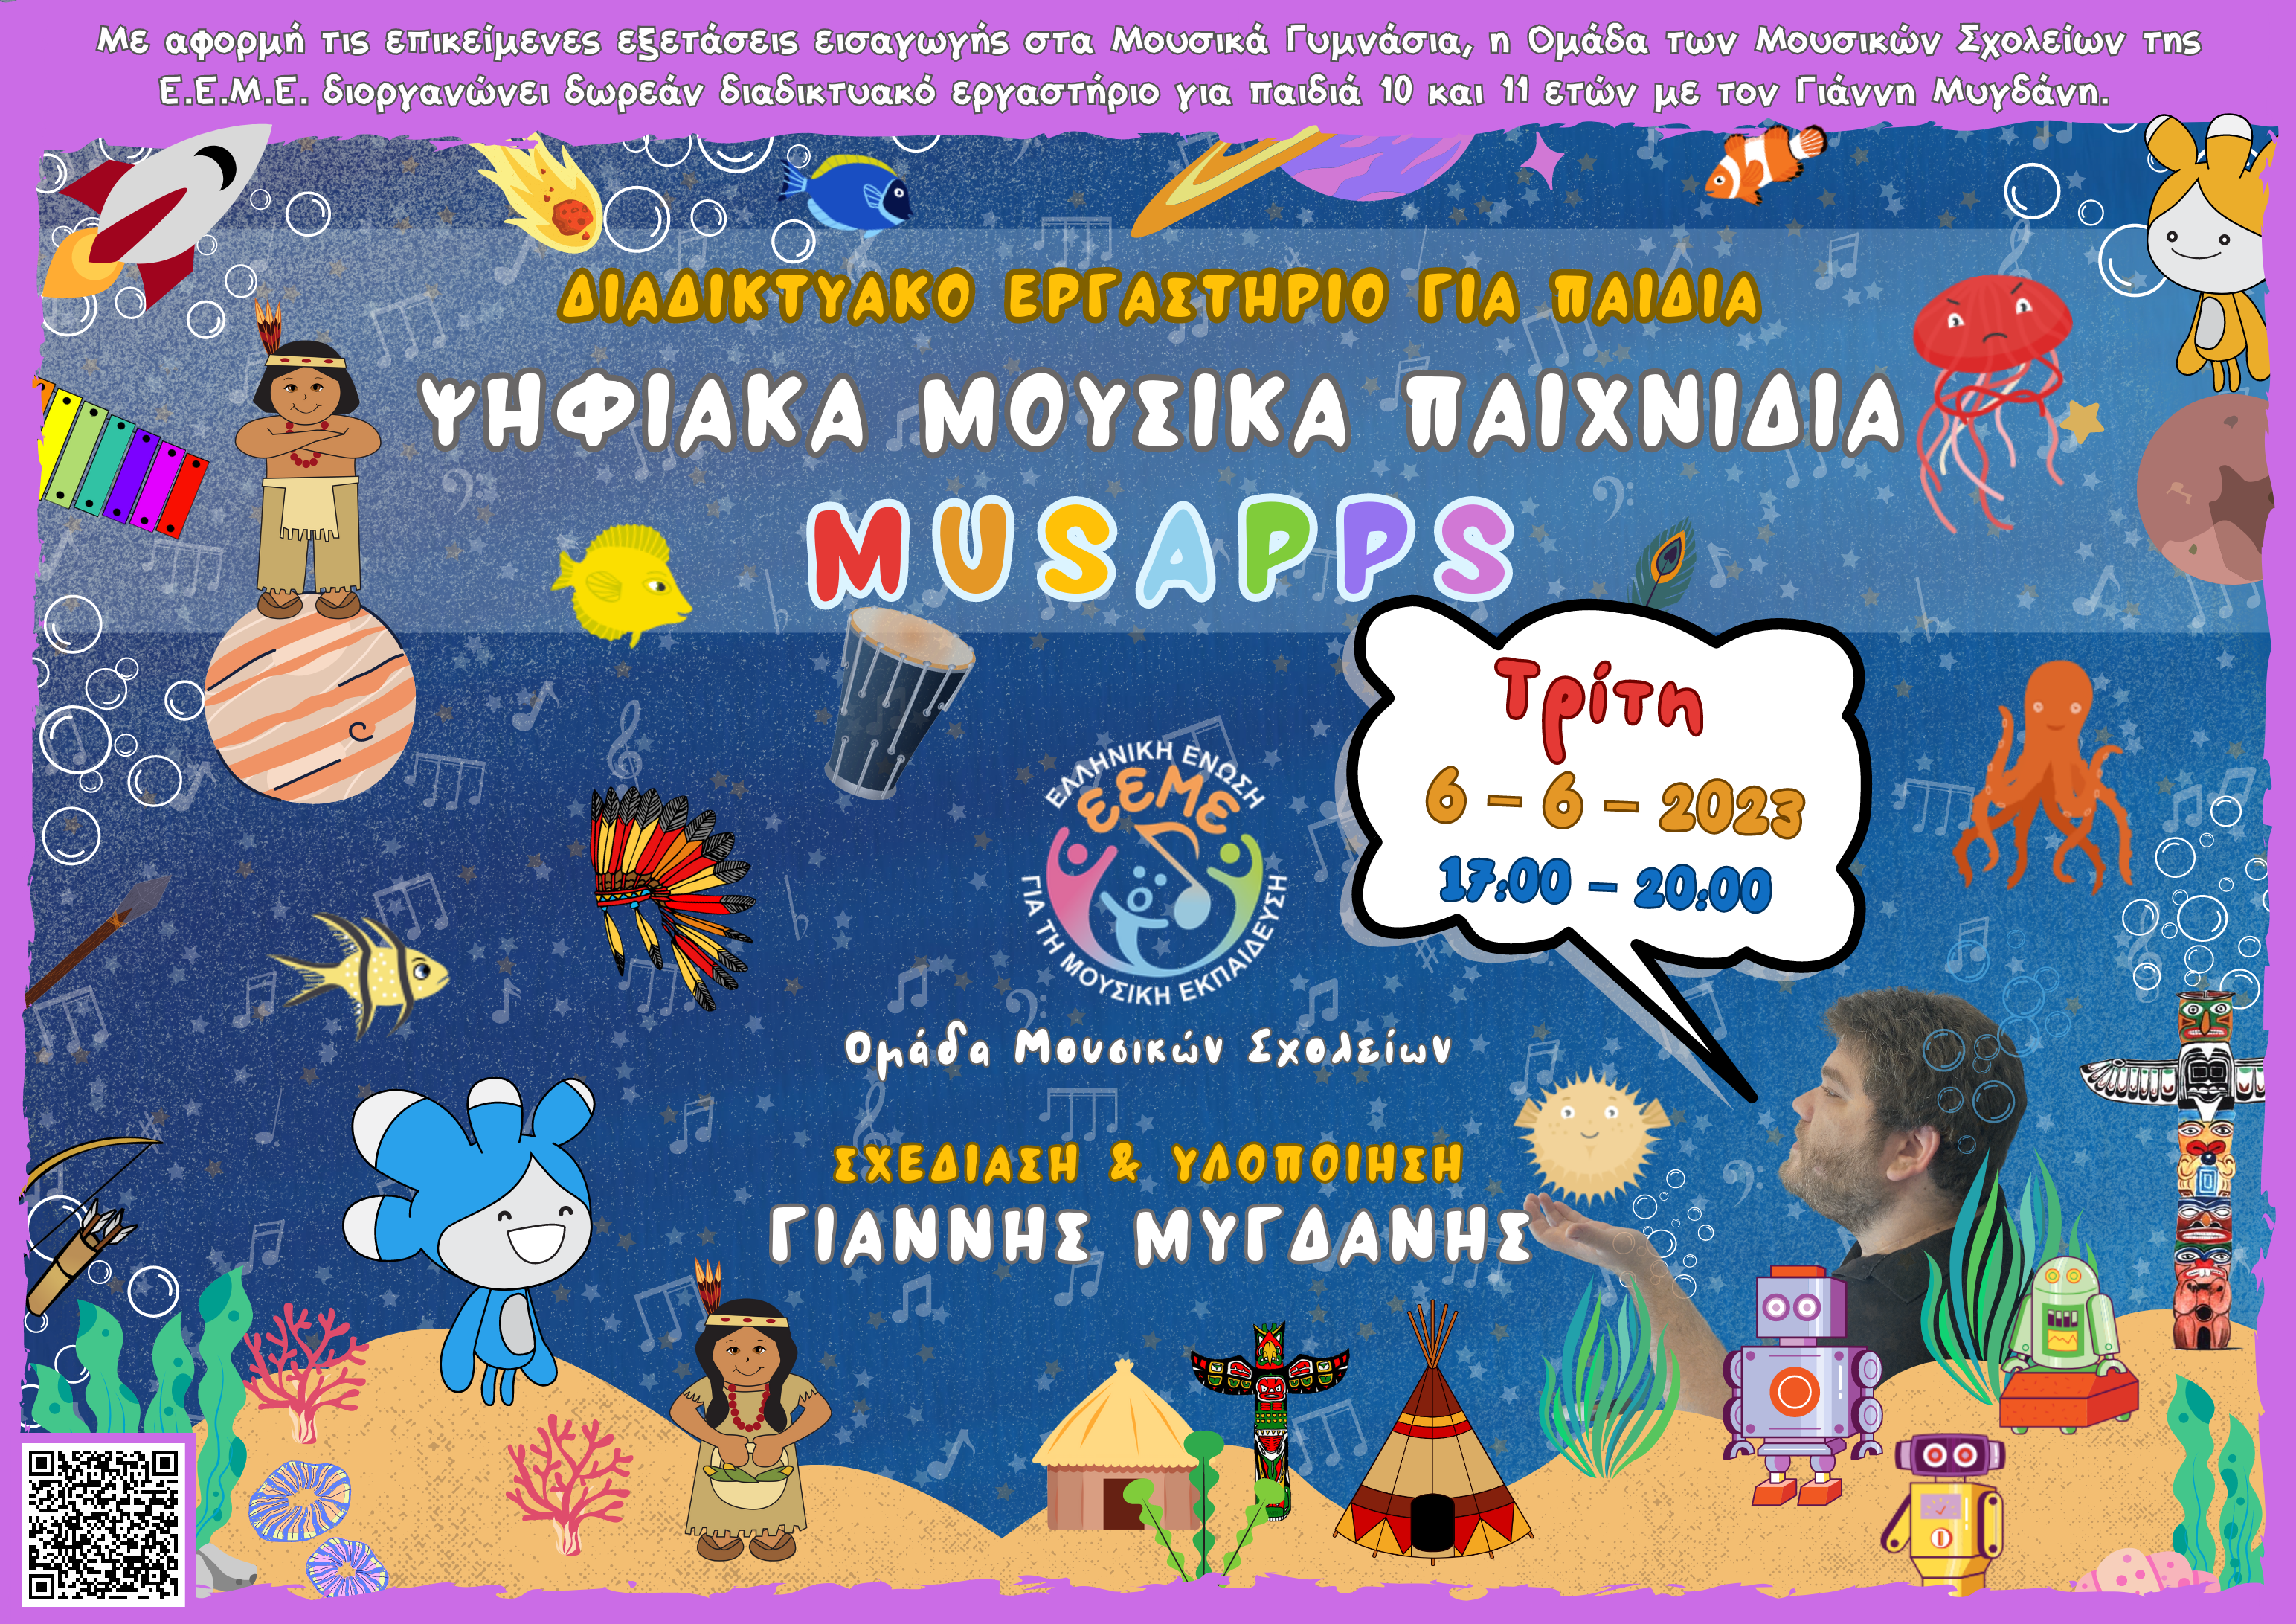 Αφισα - ψηφιακα μουσικα παιχνιδια musapps